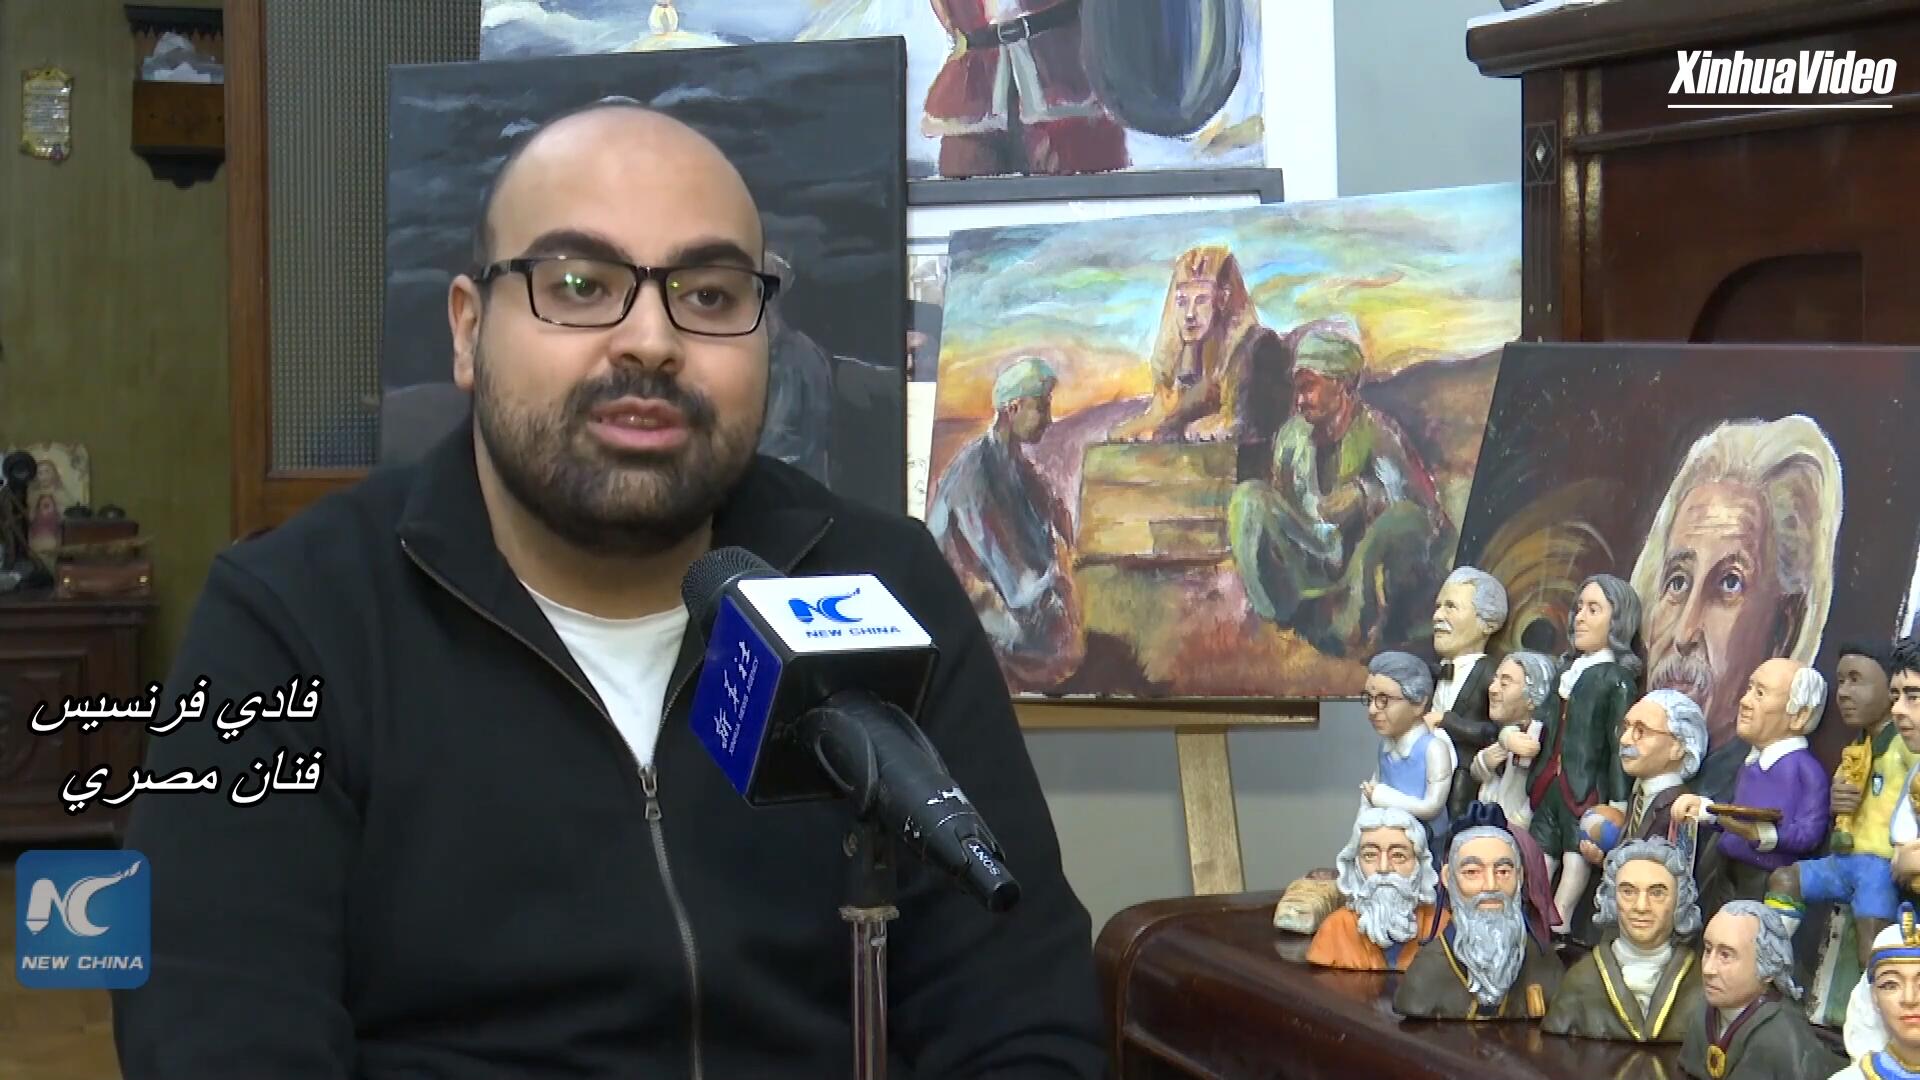 فيديو: فنان مصري ينحت منحوتات مصغرة لـ100 شخصية عالمية مؤثرة